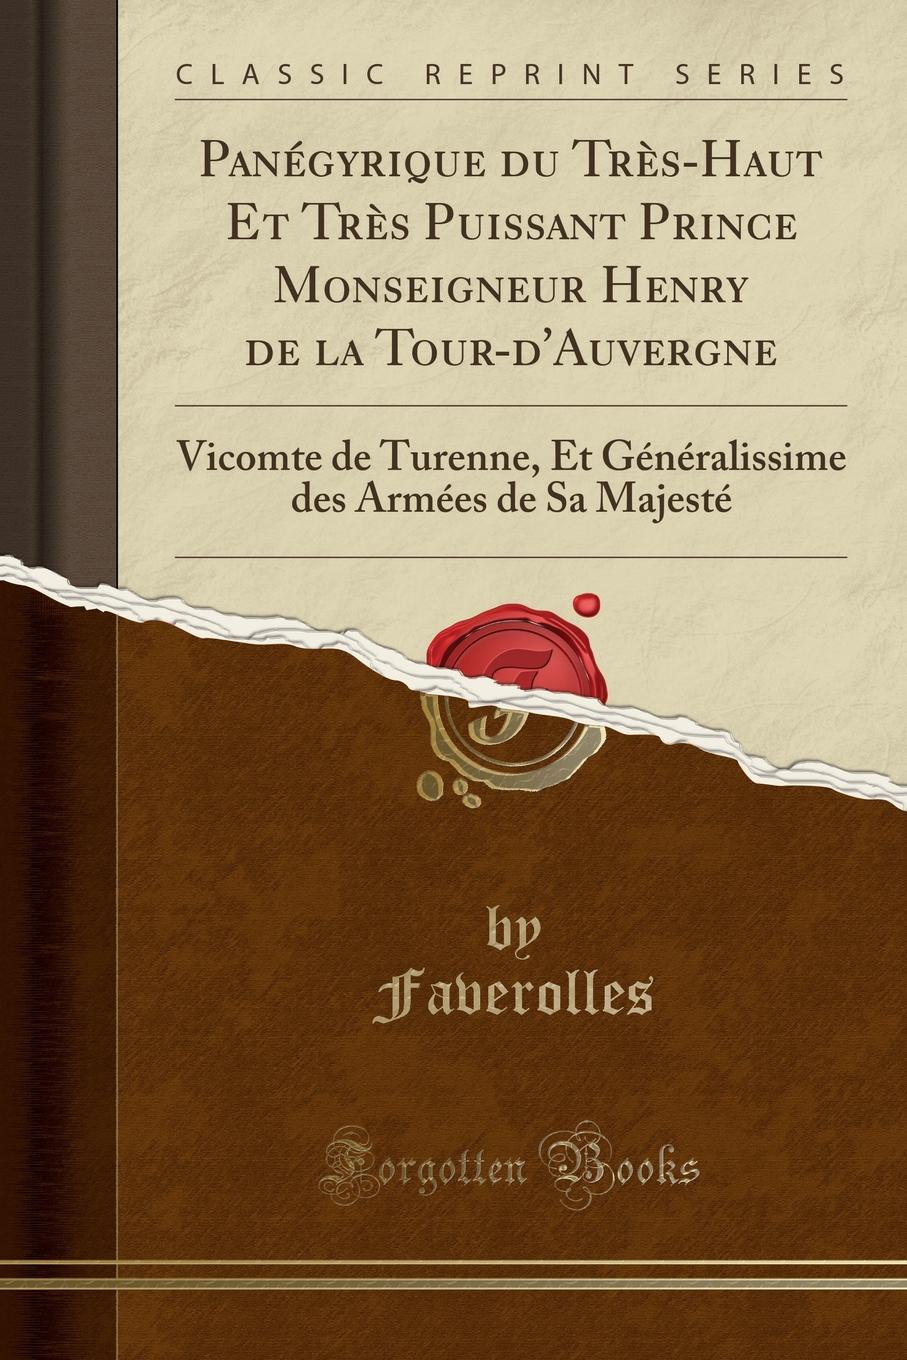 фото Panegyrique du Tres-Haut Et Tres Puissant Prince Monseigneur Henry de la Tour-d.Auvergne. Vicomte de Turenne, Et Generalissime des Armees de Sa Majeste (Classic Reprint)